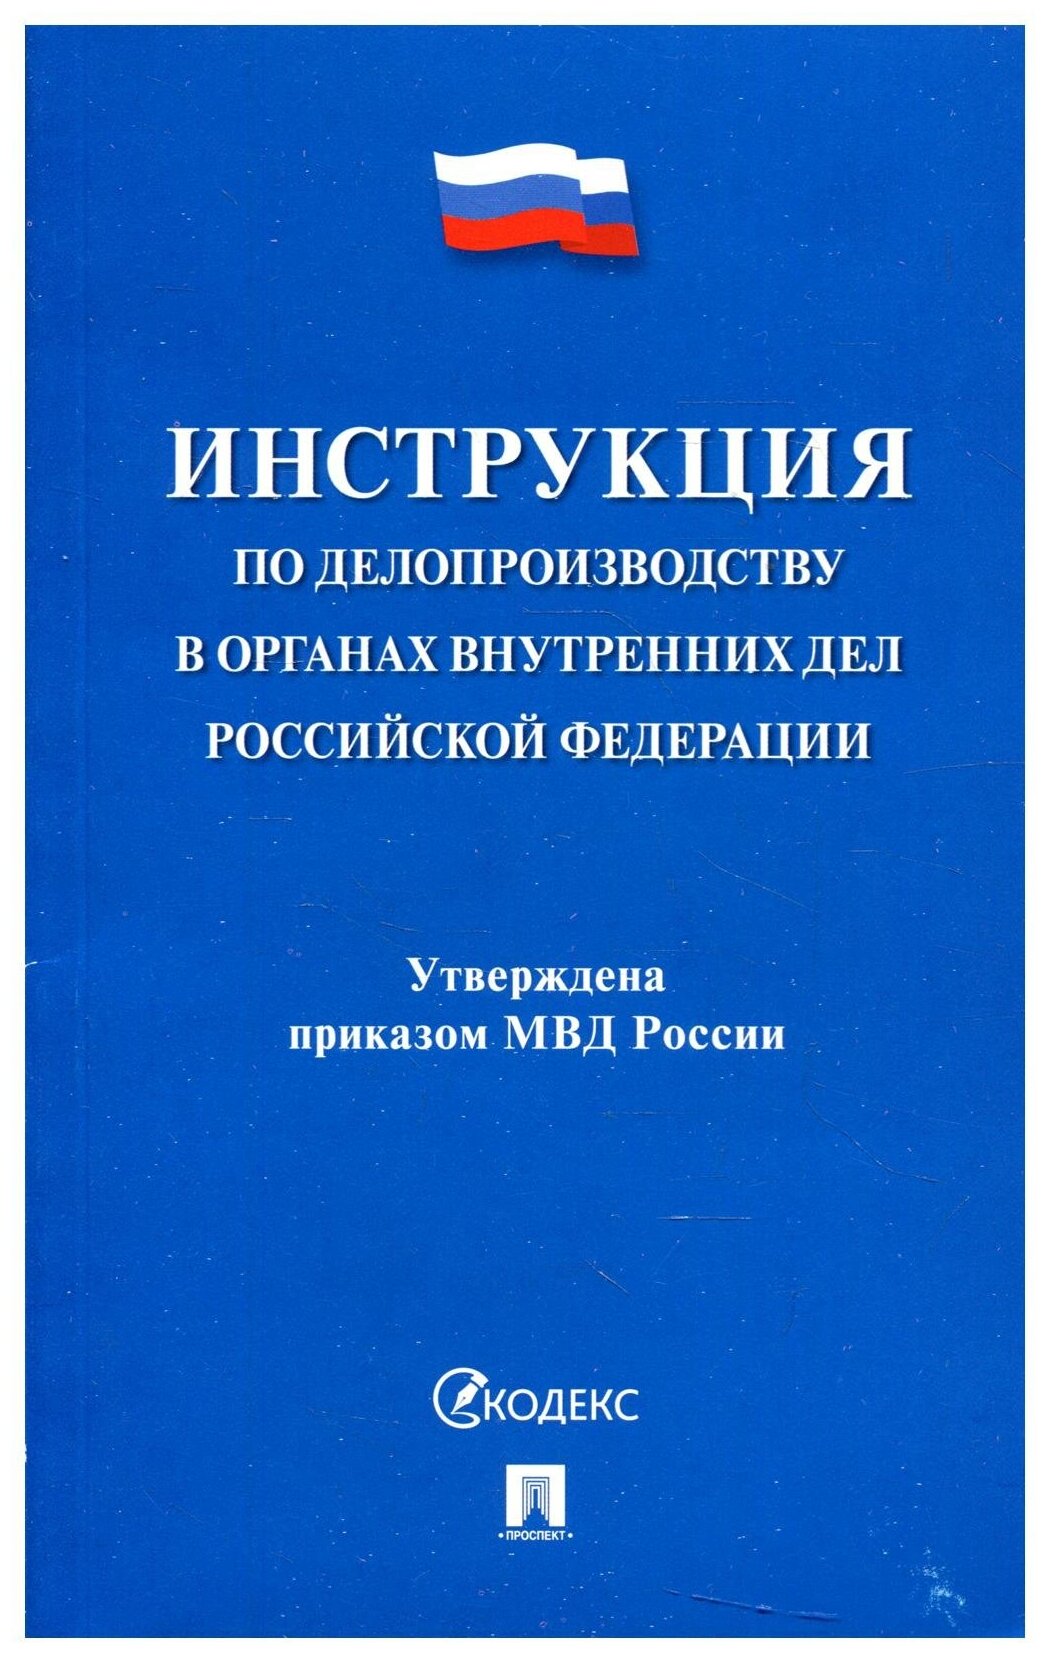 Инструкция по делопроизводству в органах внутренних дел Российской Федерации - фото №1